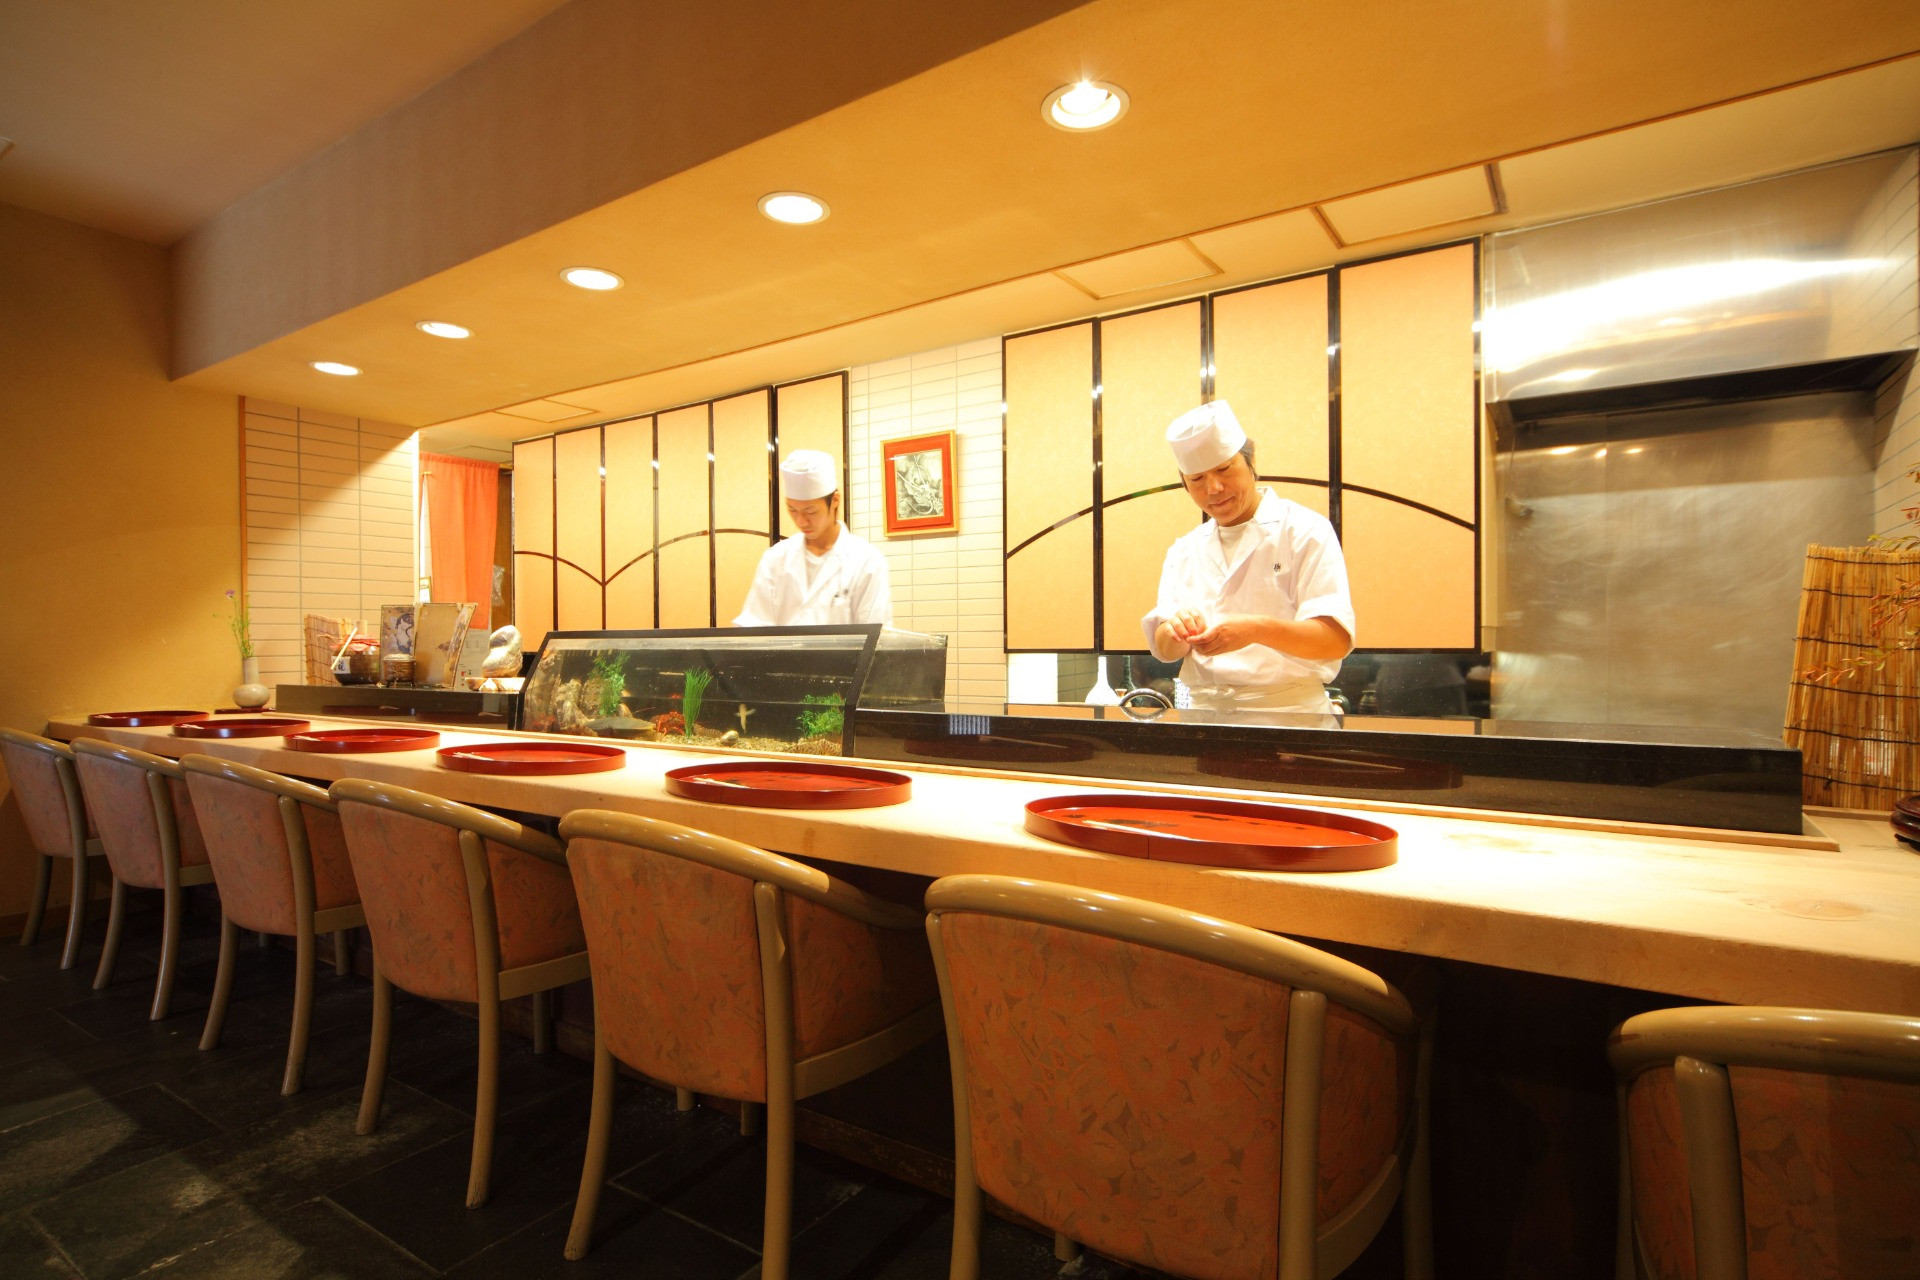 便利な名古屋市内の立地にて和食店を営みお客様をおもてなし